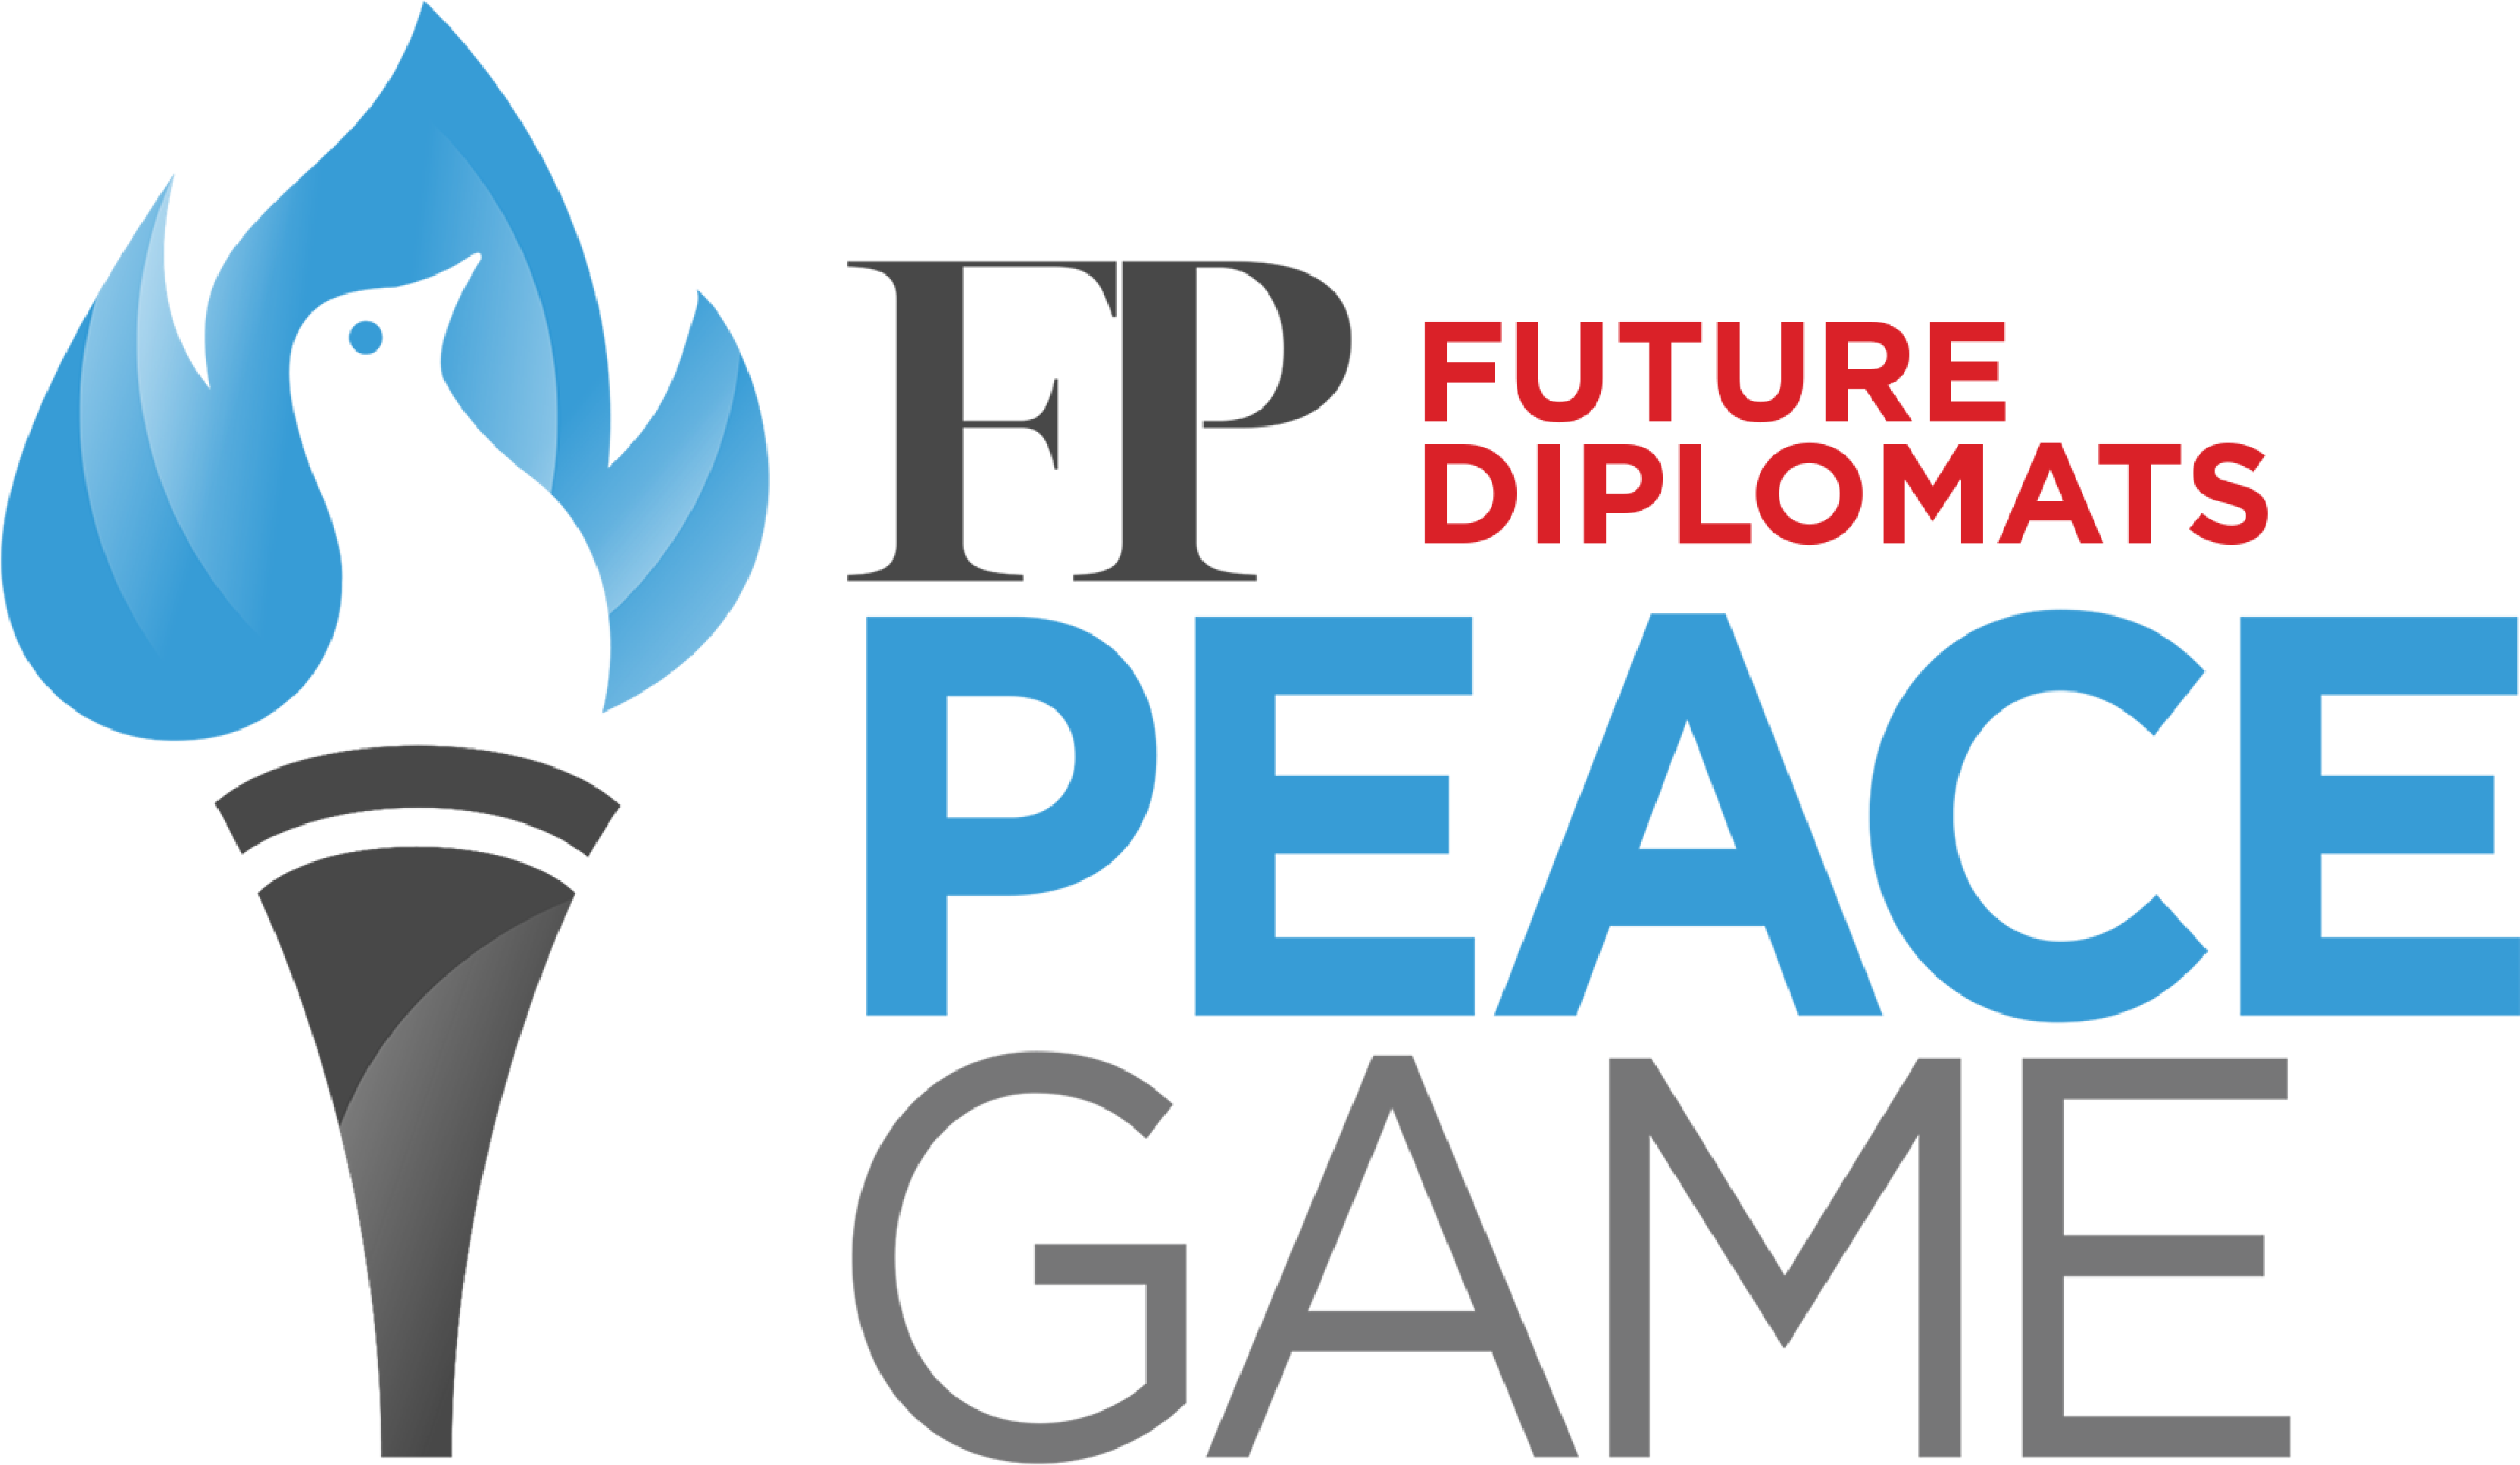 FP Future Diplomats PeaceGame